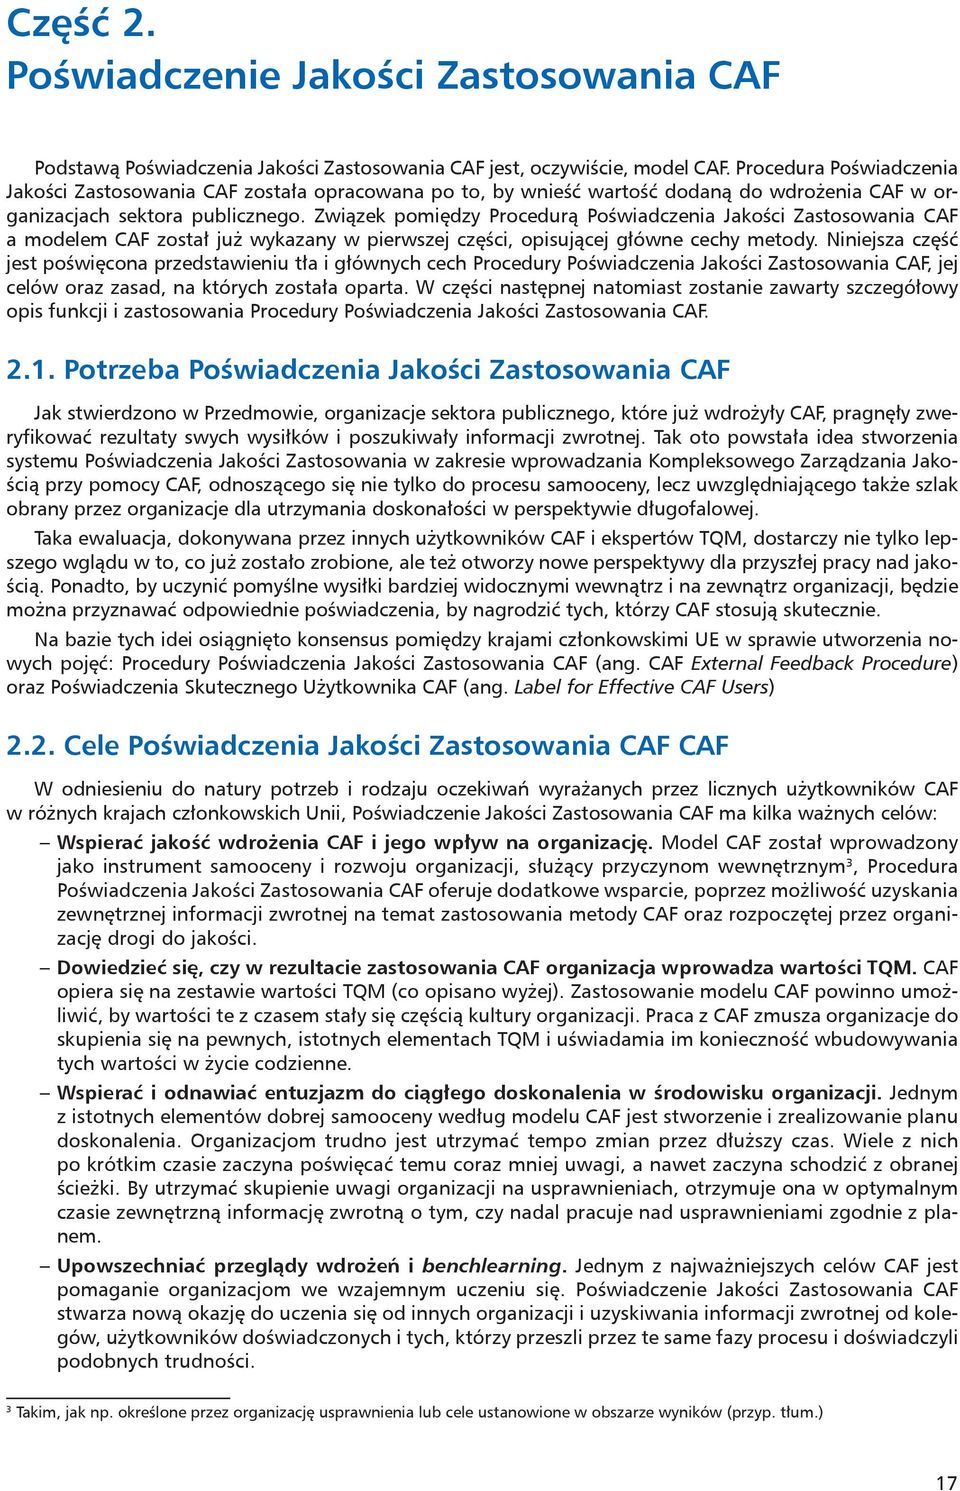 Związek pomiędzy Procedurą Poświadczenia Jakości Zastosowania CAF a modelem CAF został już wykazany w pierwszej części, opisującej główne cechy metody.